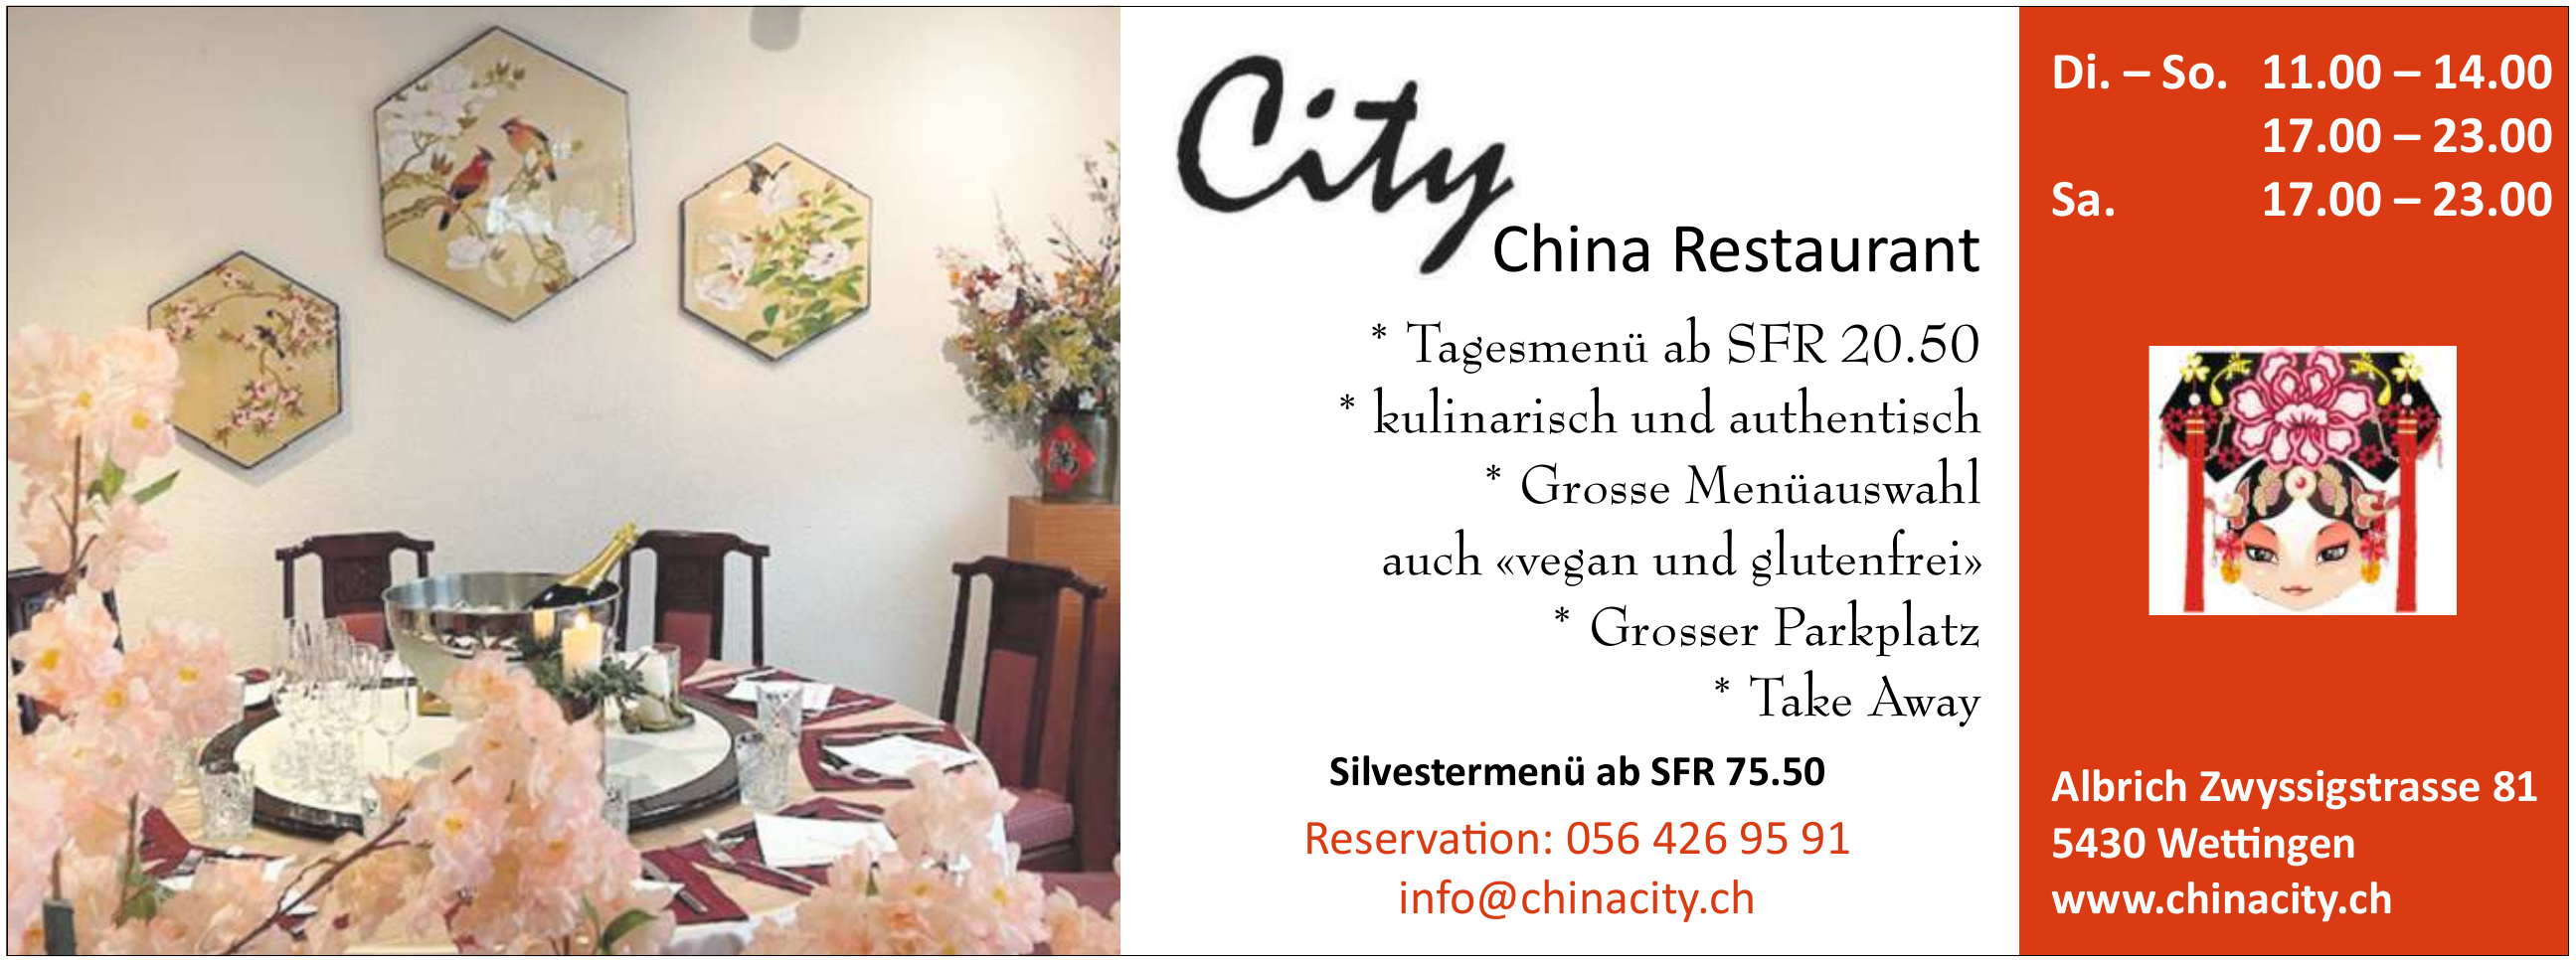 City China Restaurant